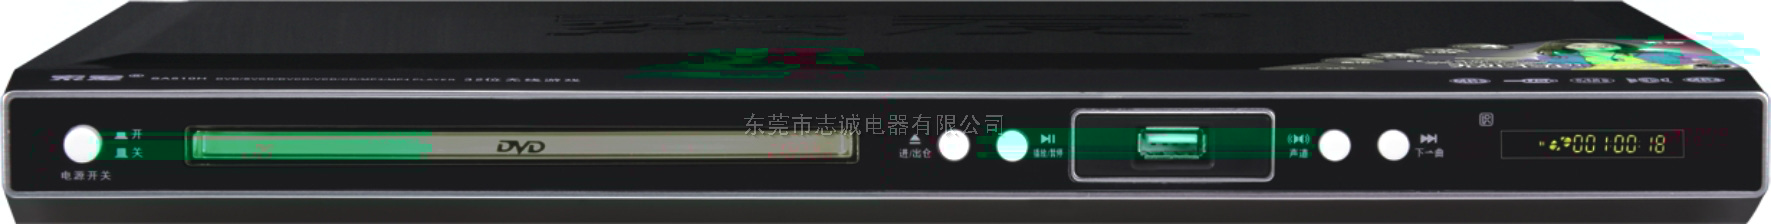 索愛歌霸DVD SA710D